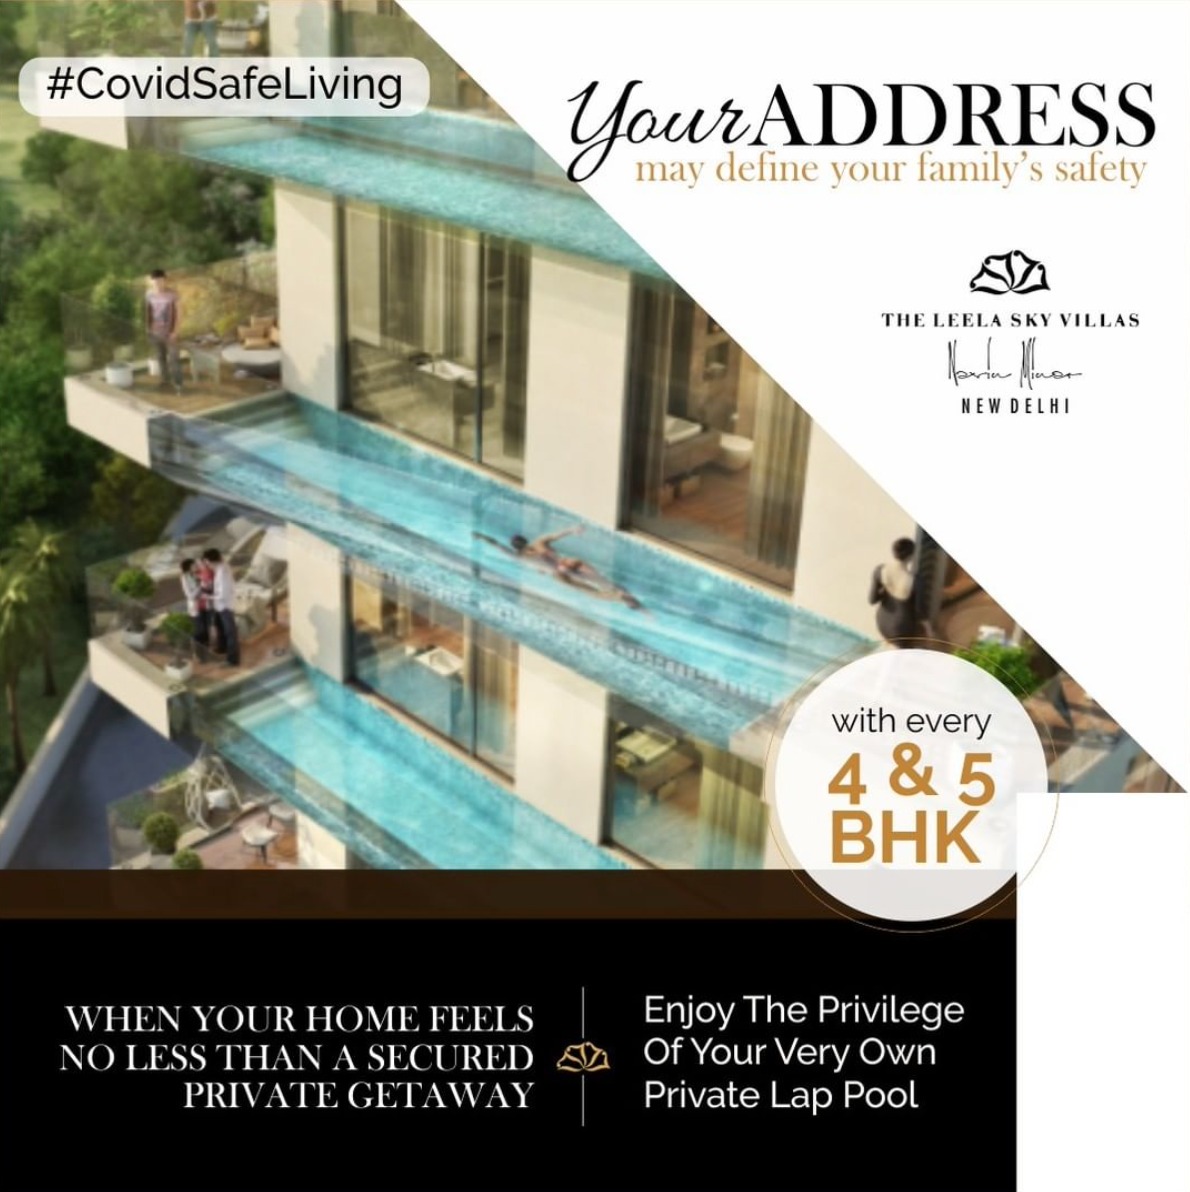 4 & 5 BHK Luxury floors with Privilege Lap Pool at The Leela Sky Villas in Delhi Update